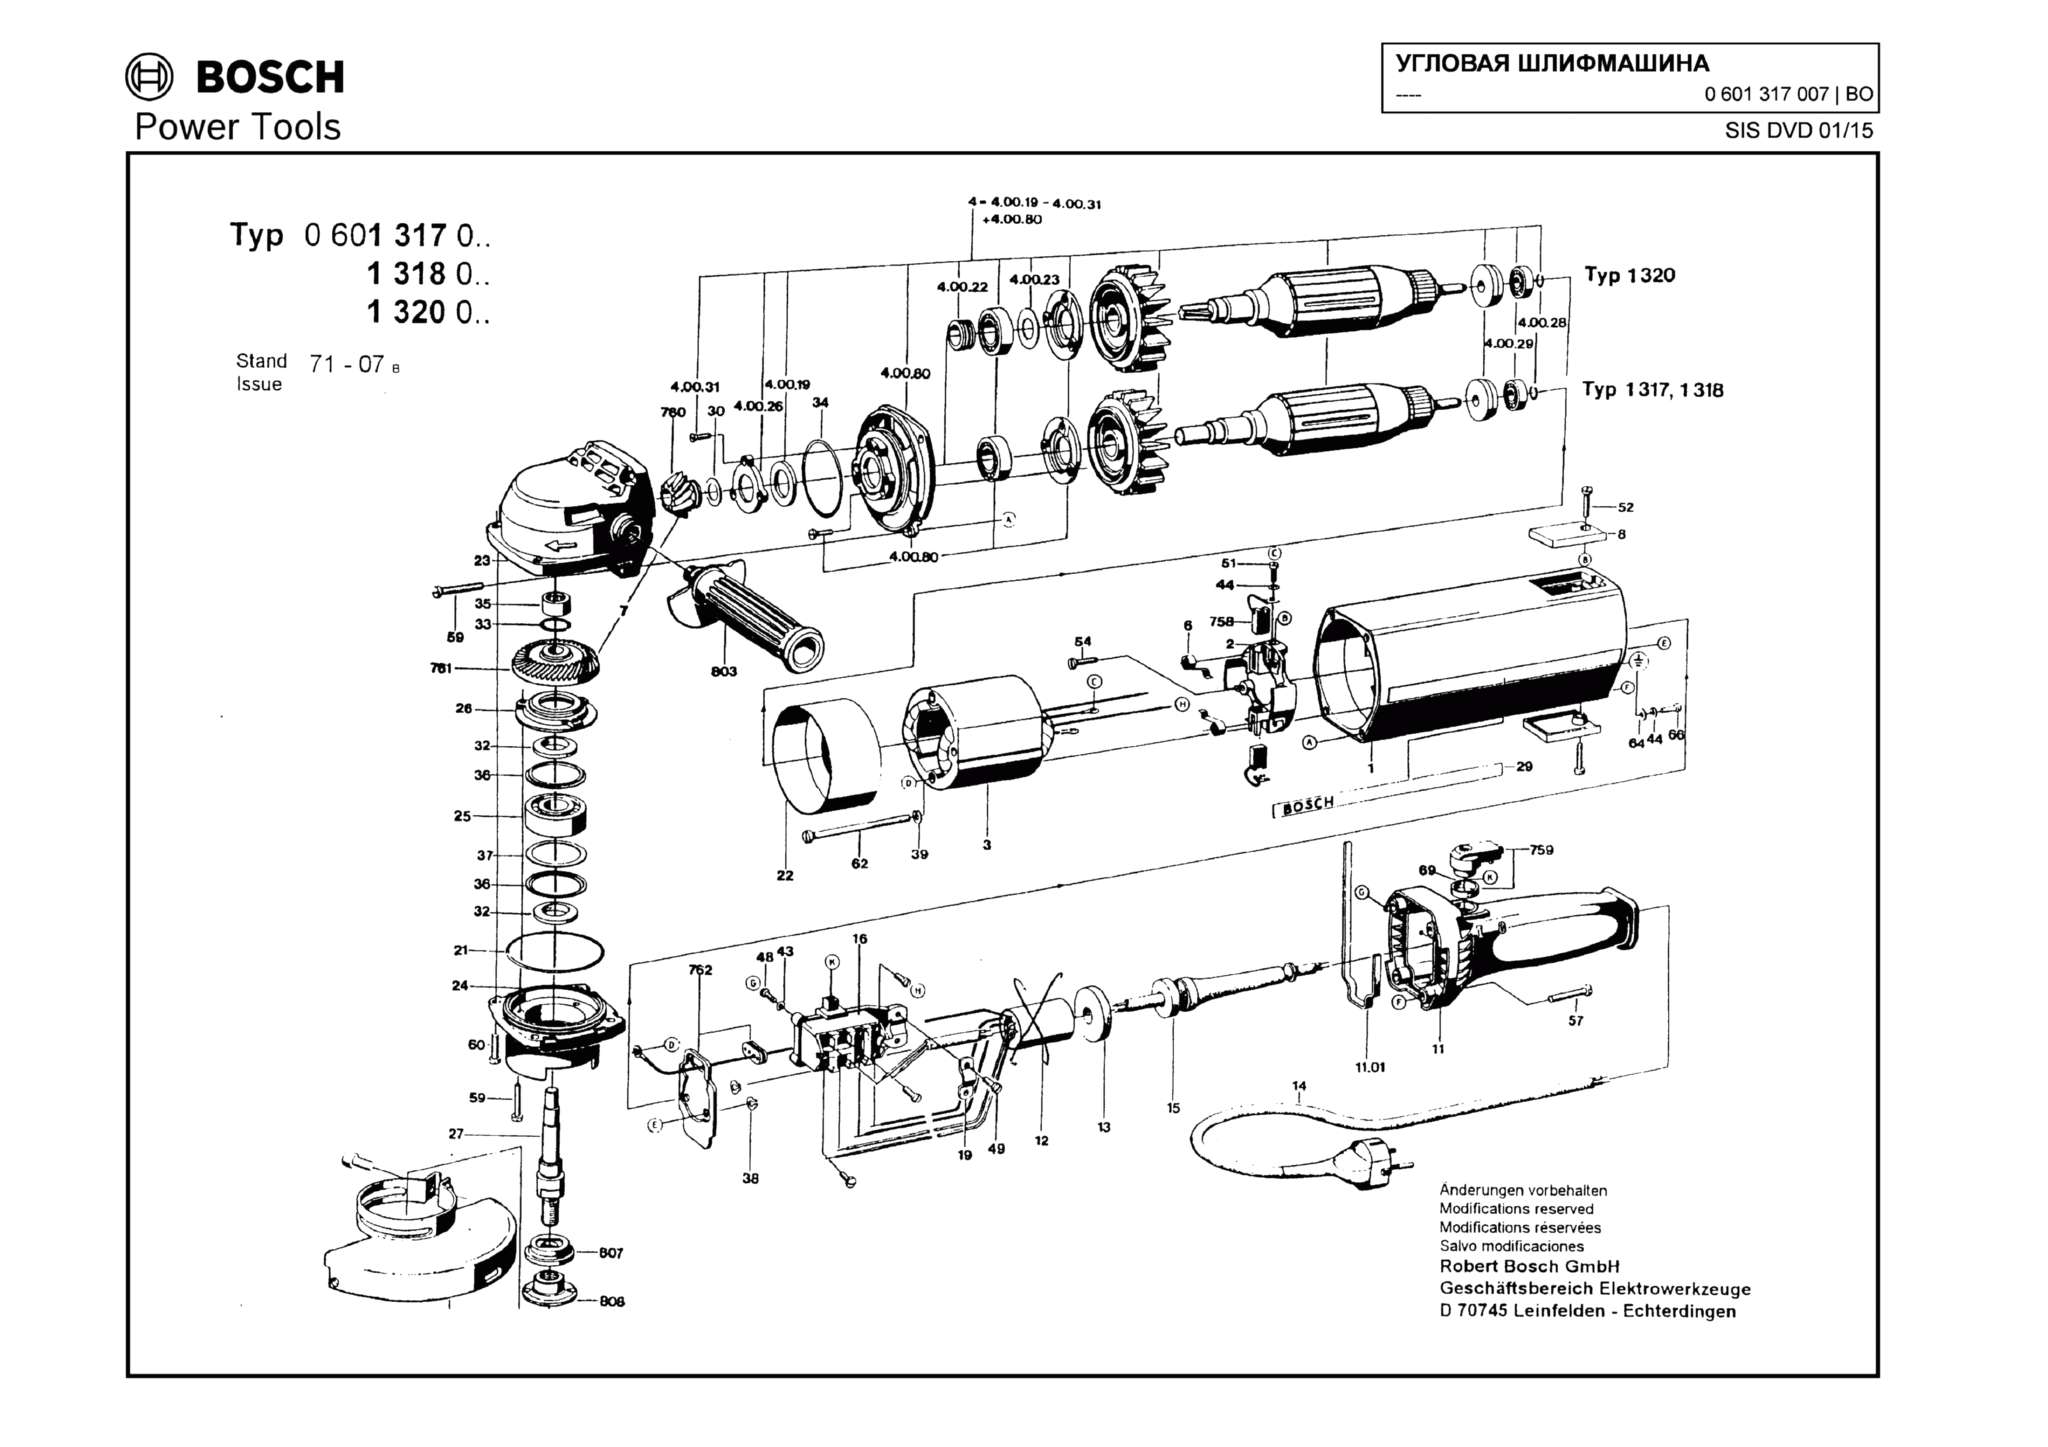 Запчасти, схема и деталировка Bosch (ТИП 0601317007)